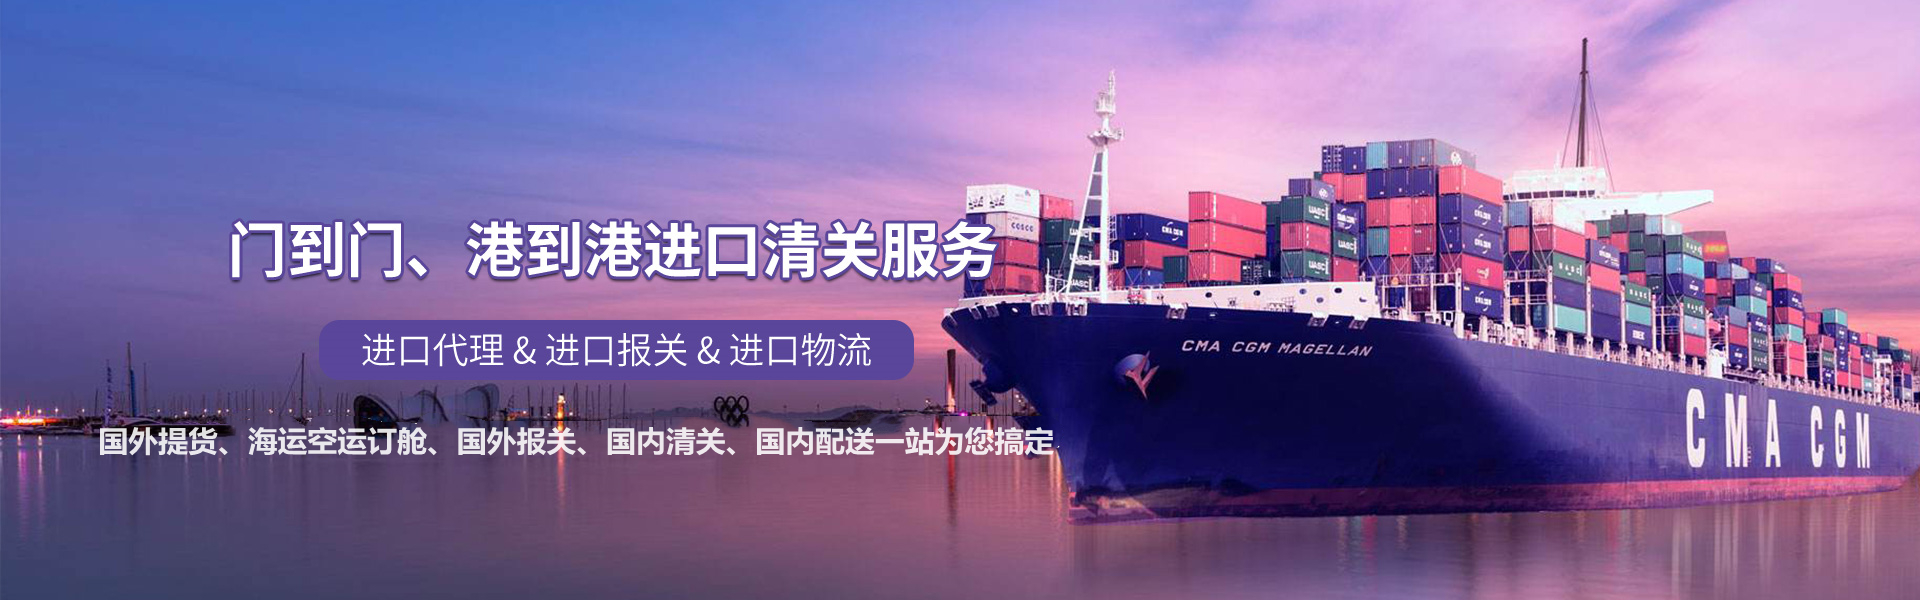 广州电子设备进口流程及代理报关服务